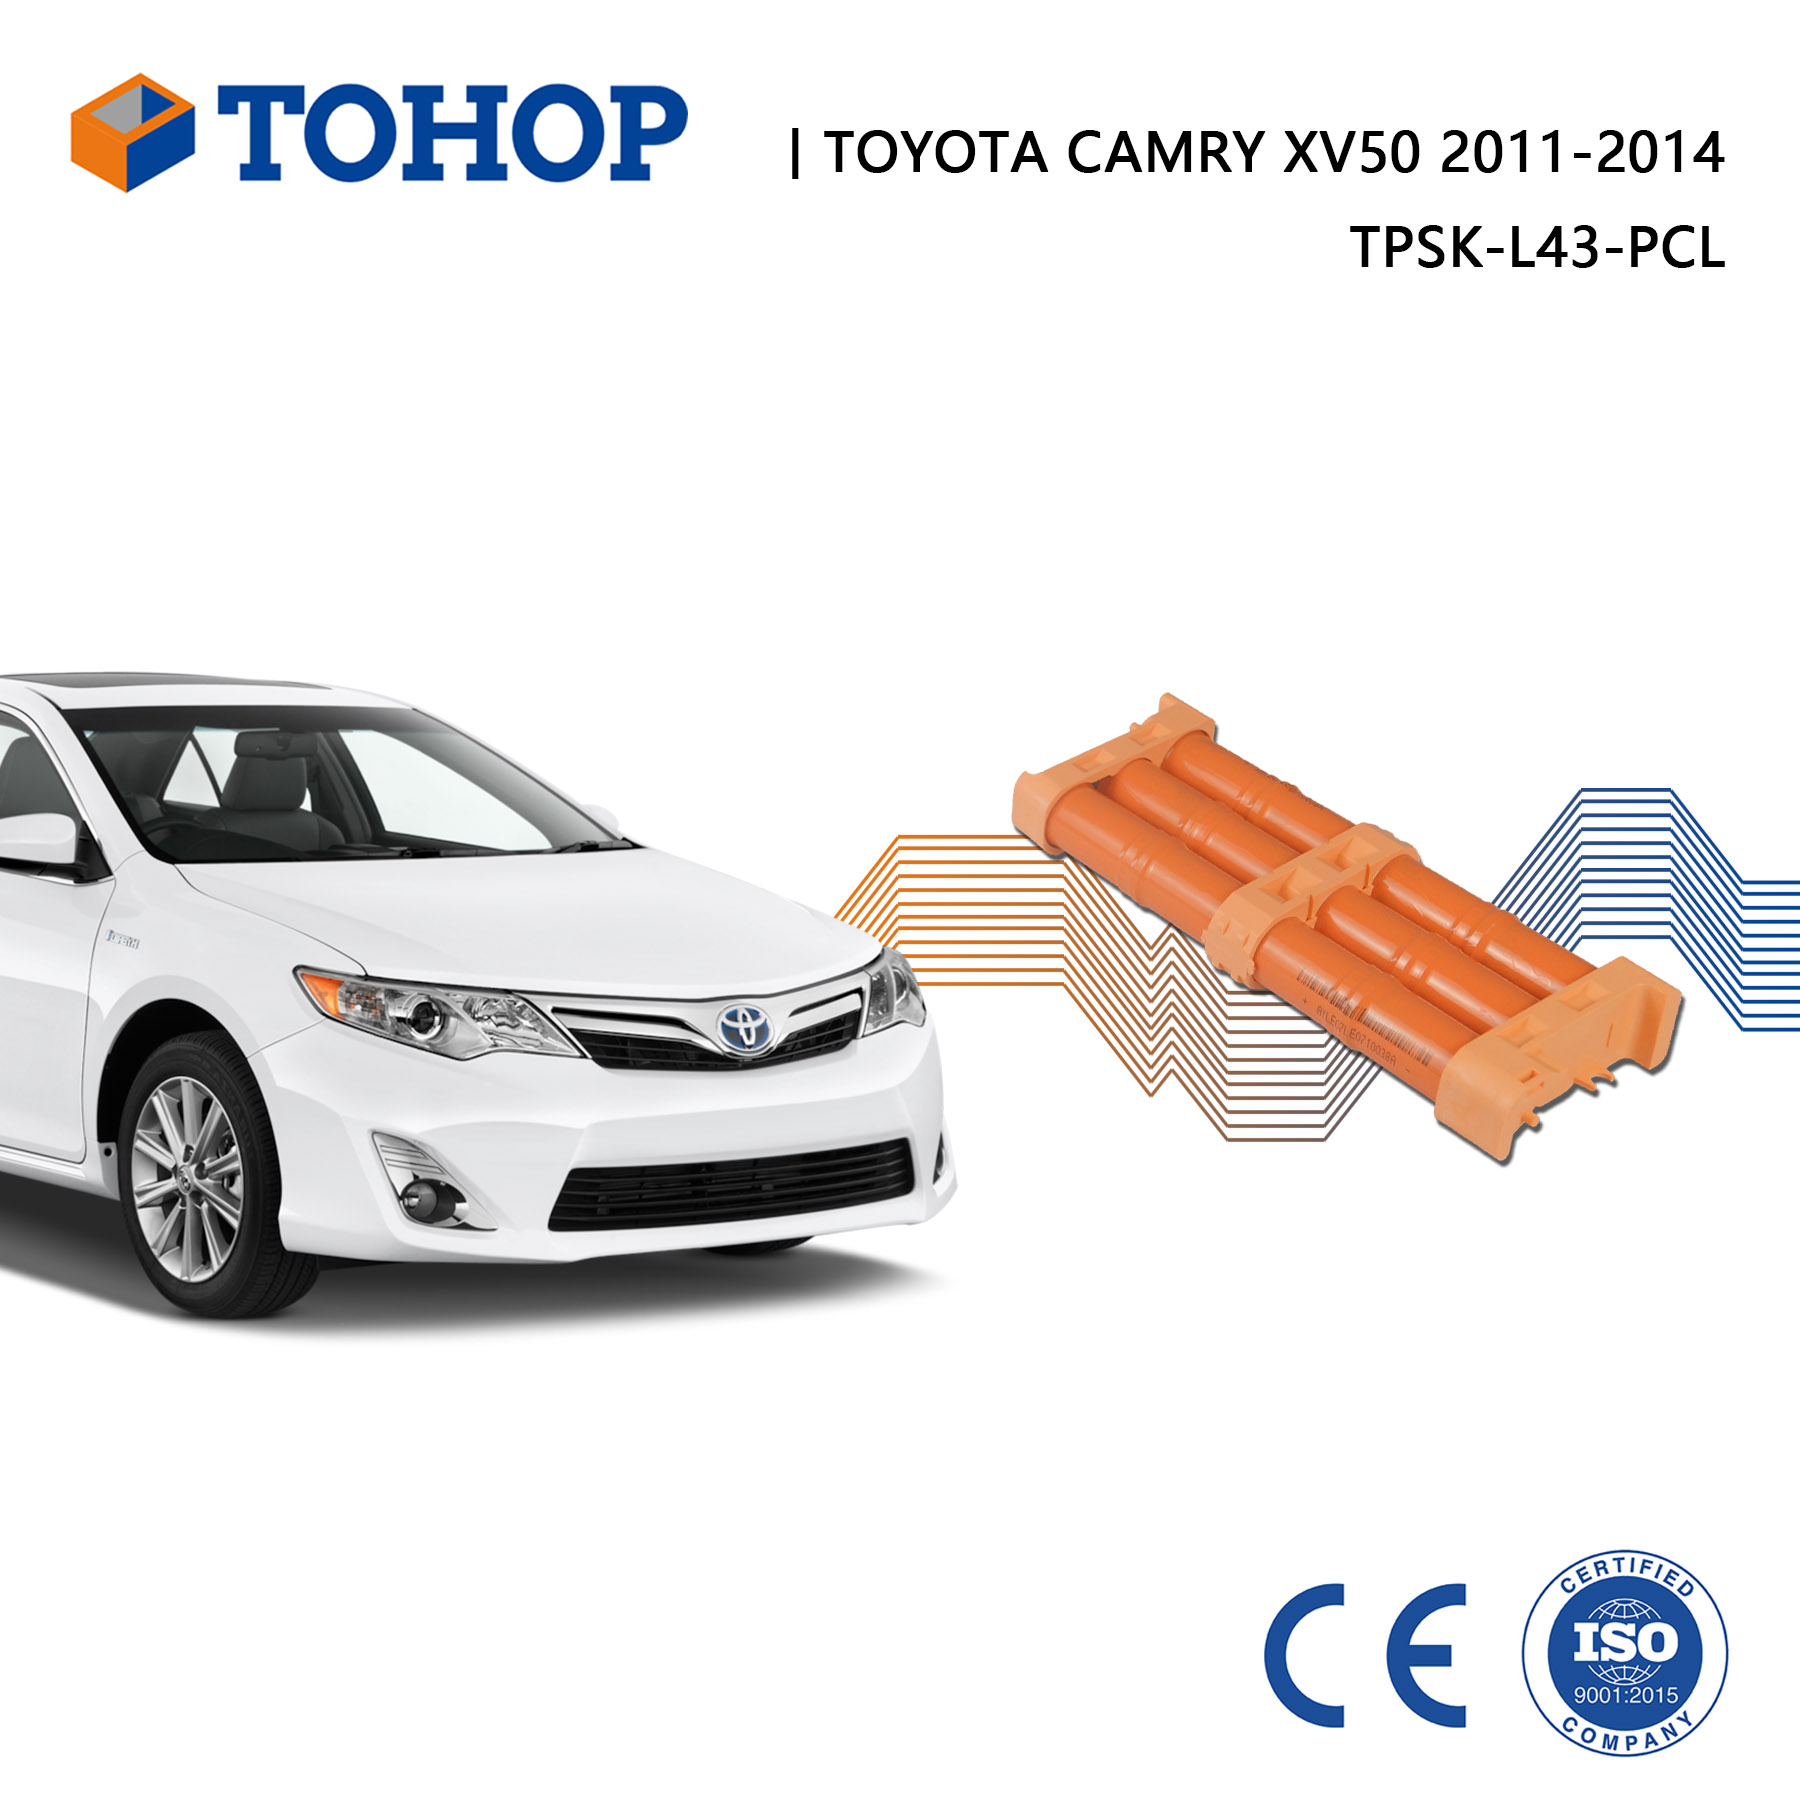 Tout nouveau Camry XV50 2014 14,4v Pack de batterie hybride pour Toyota